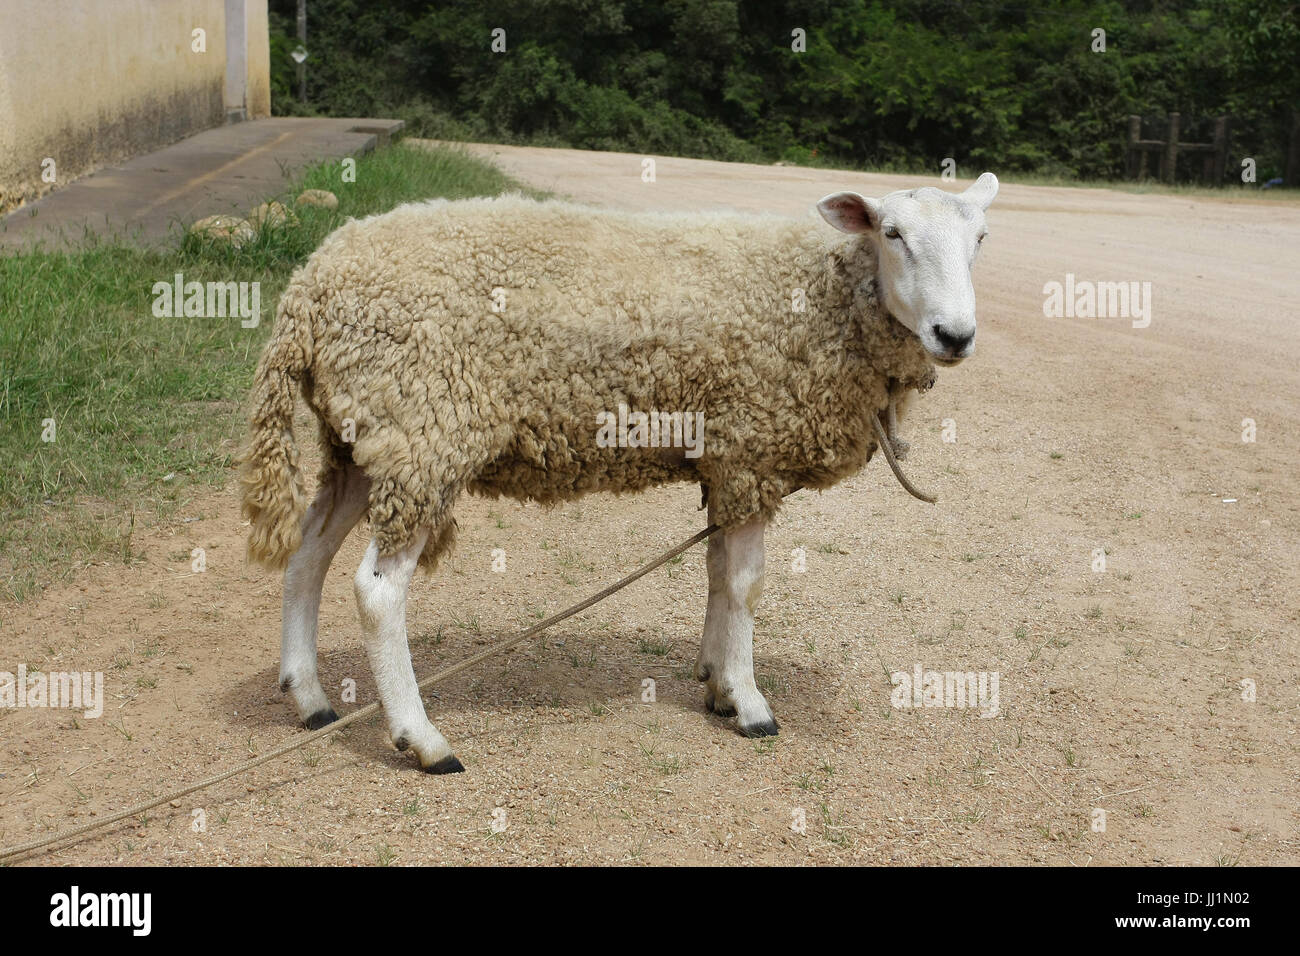 Animal, sheep, São Paulo, Brazil Stock Photo